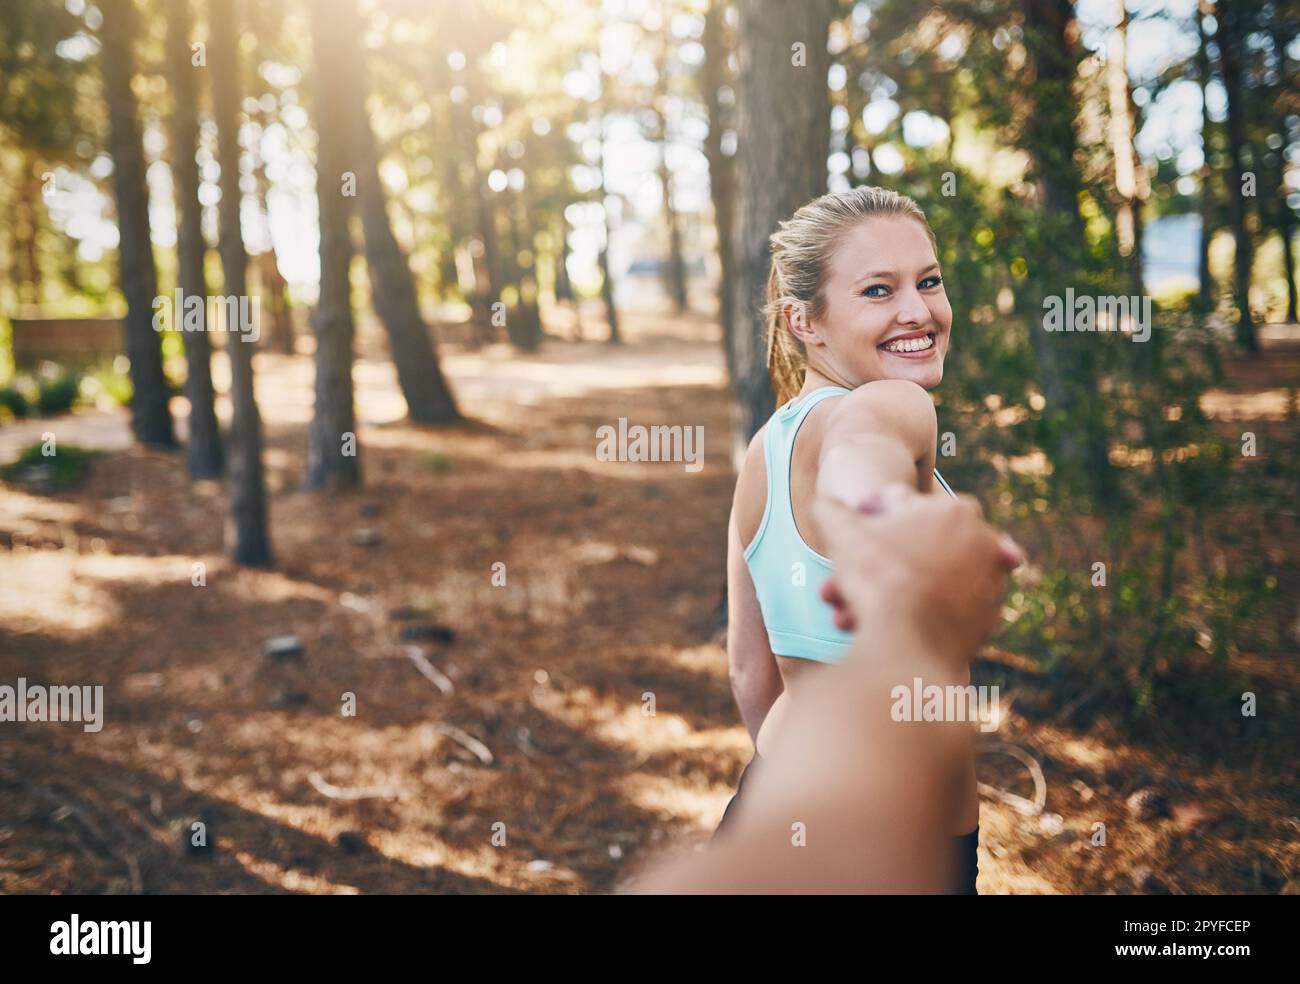 Seguimi in forma. Prospettiva personale ripresa di una giovane donna che tira il suo ragazzo nella foresta. Foto Stock